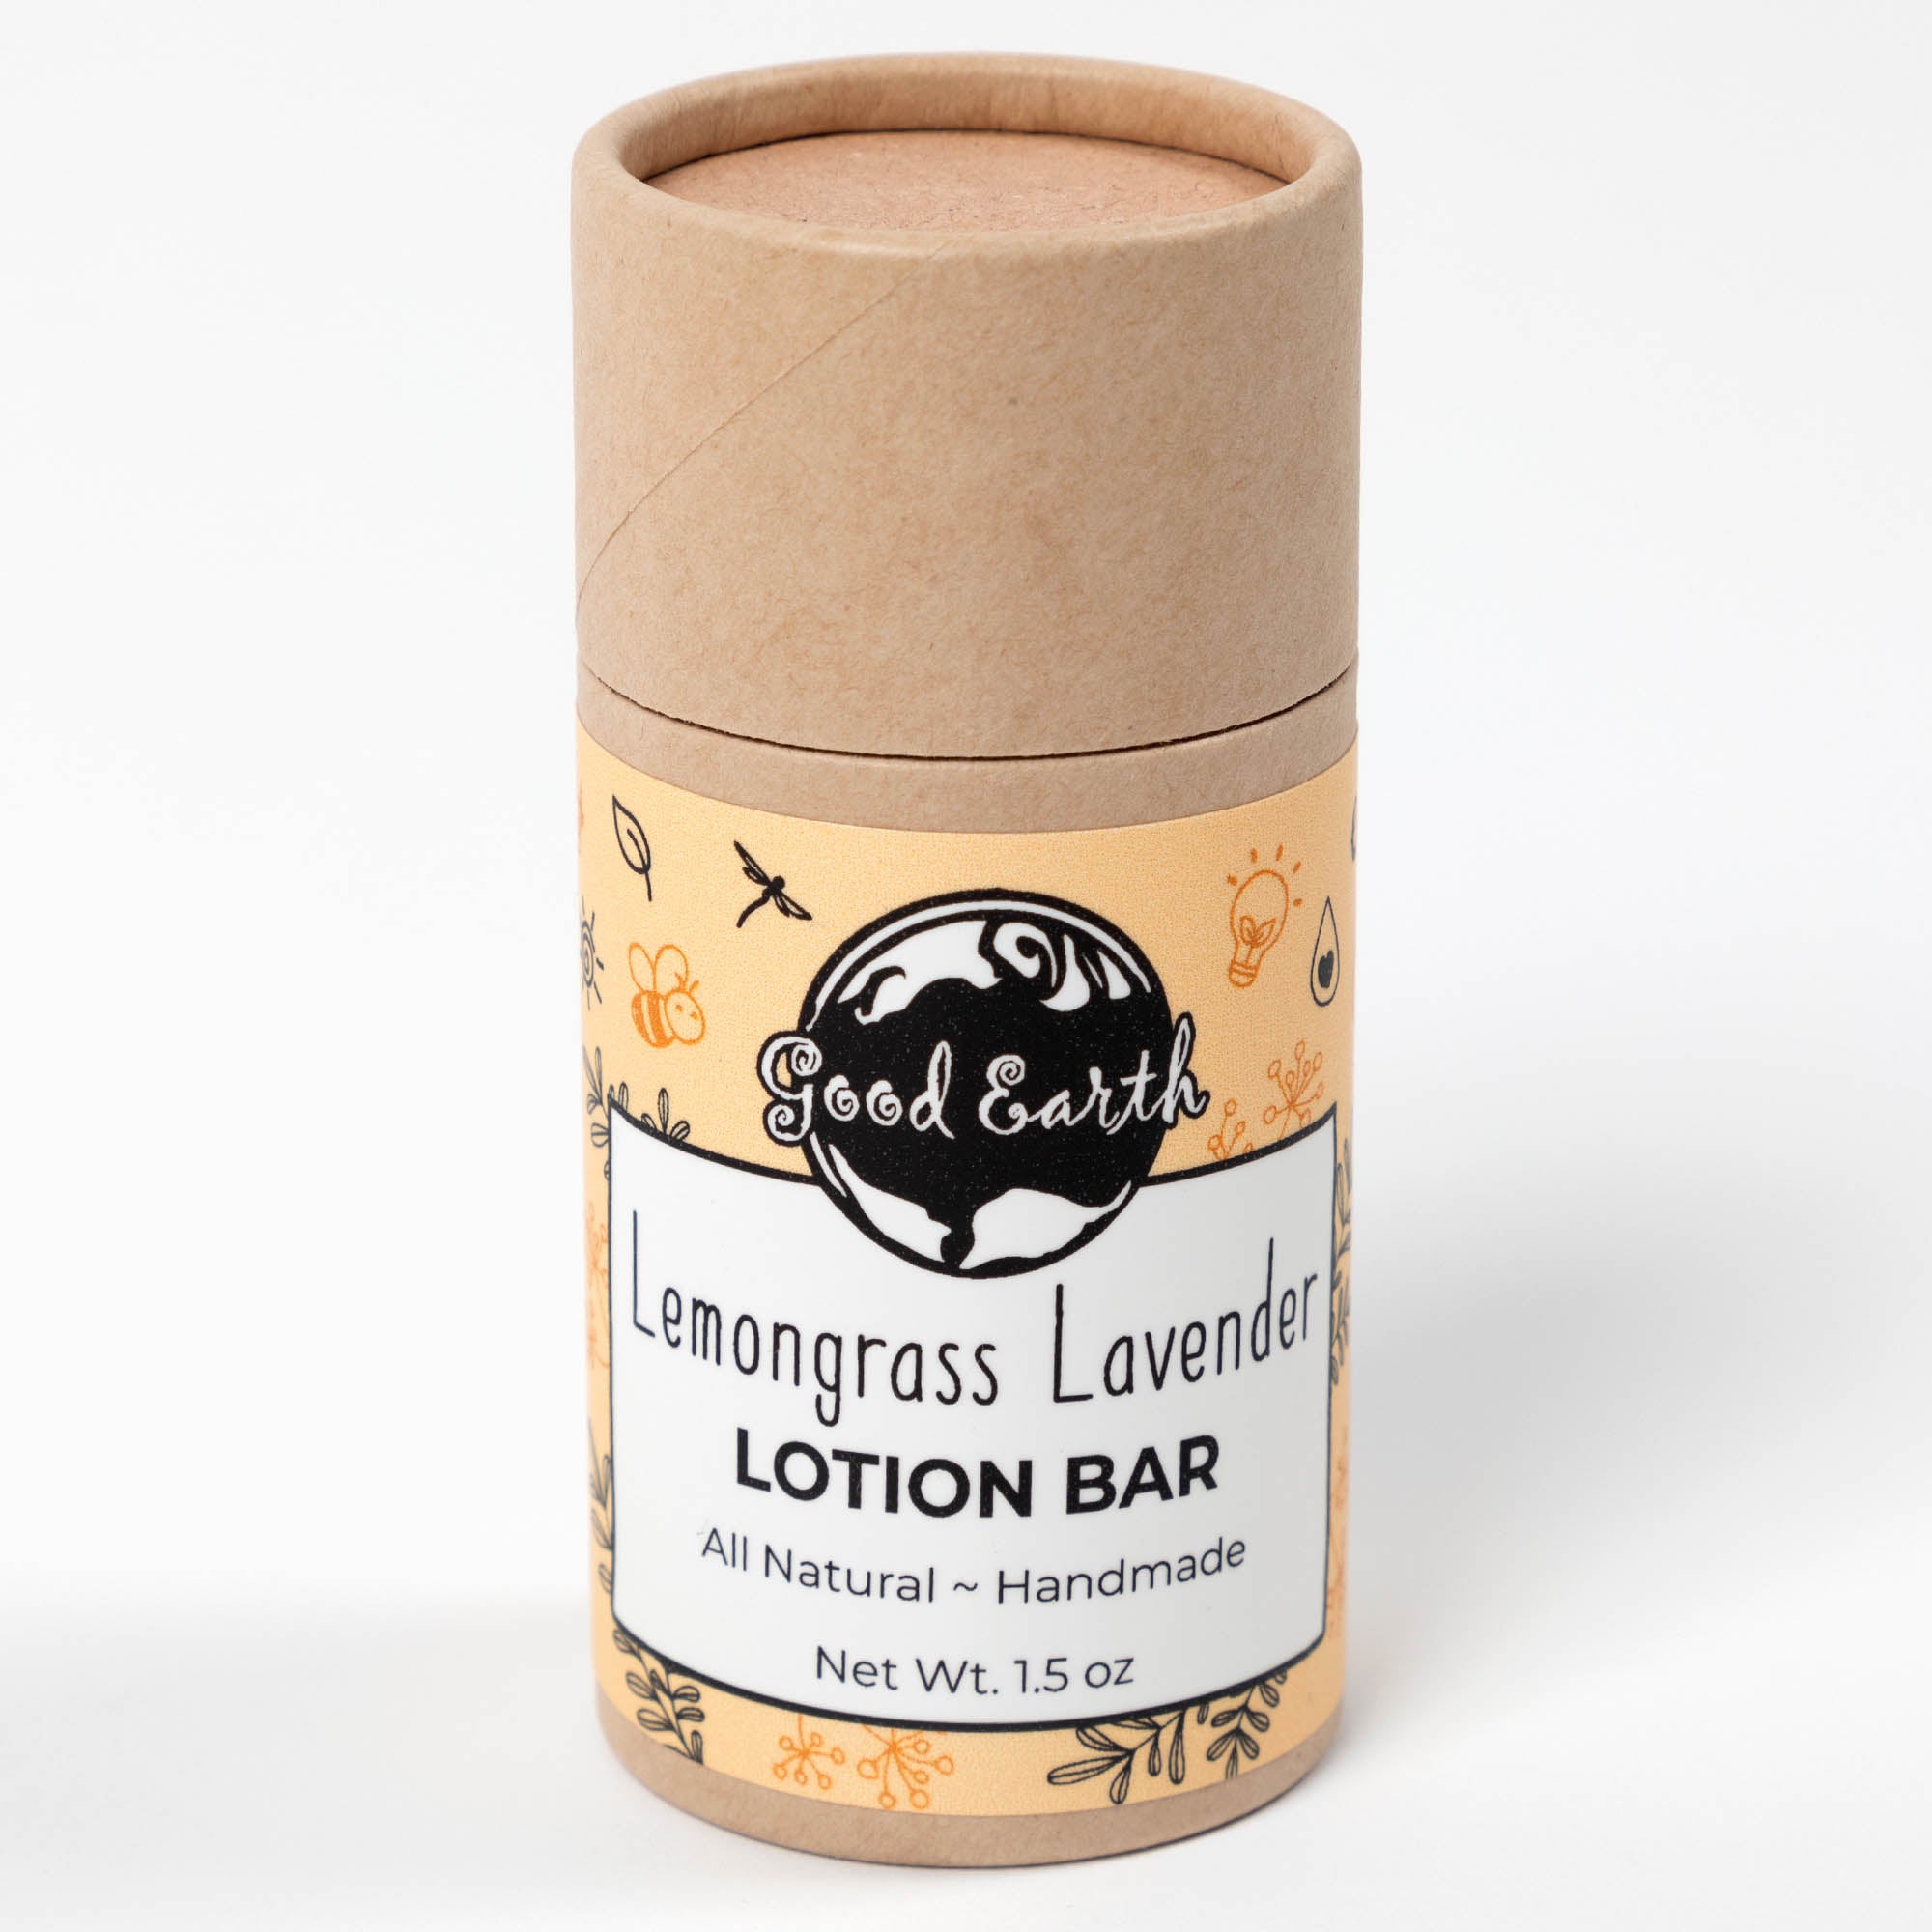 Good Earth Lotion Bar Ecotube - Lemongrass Lavender